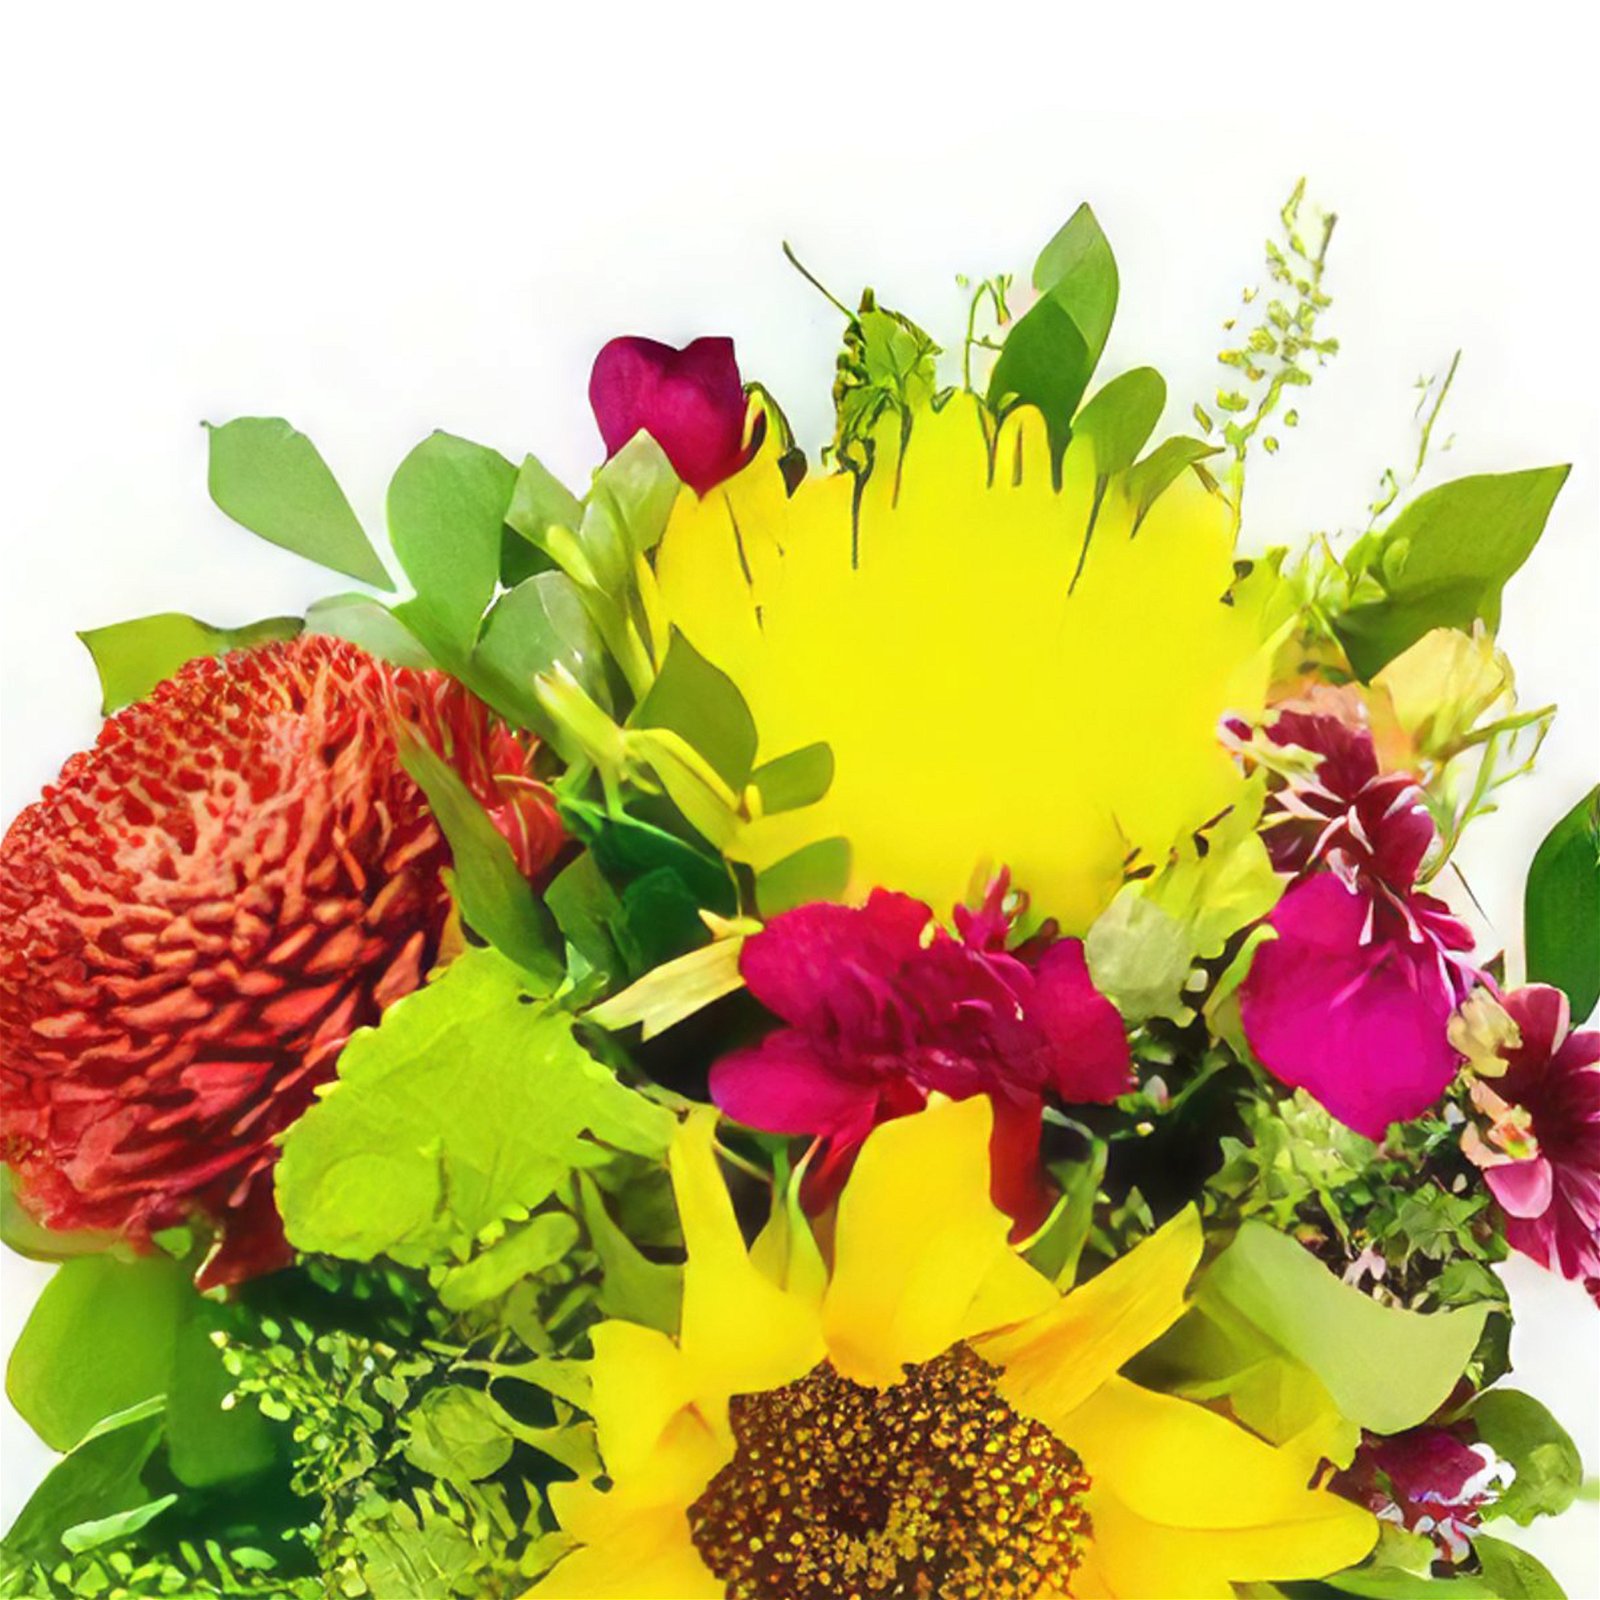 Banes flori- Iubire de primavara Buchet/aranjament floral